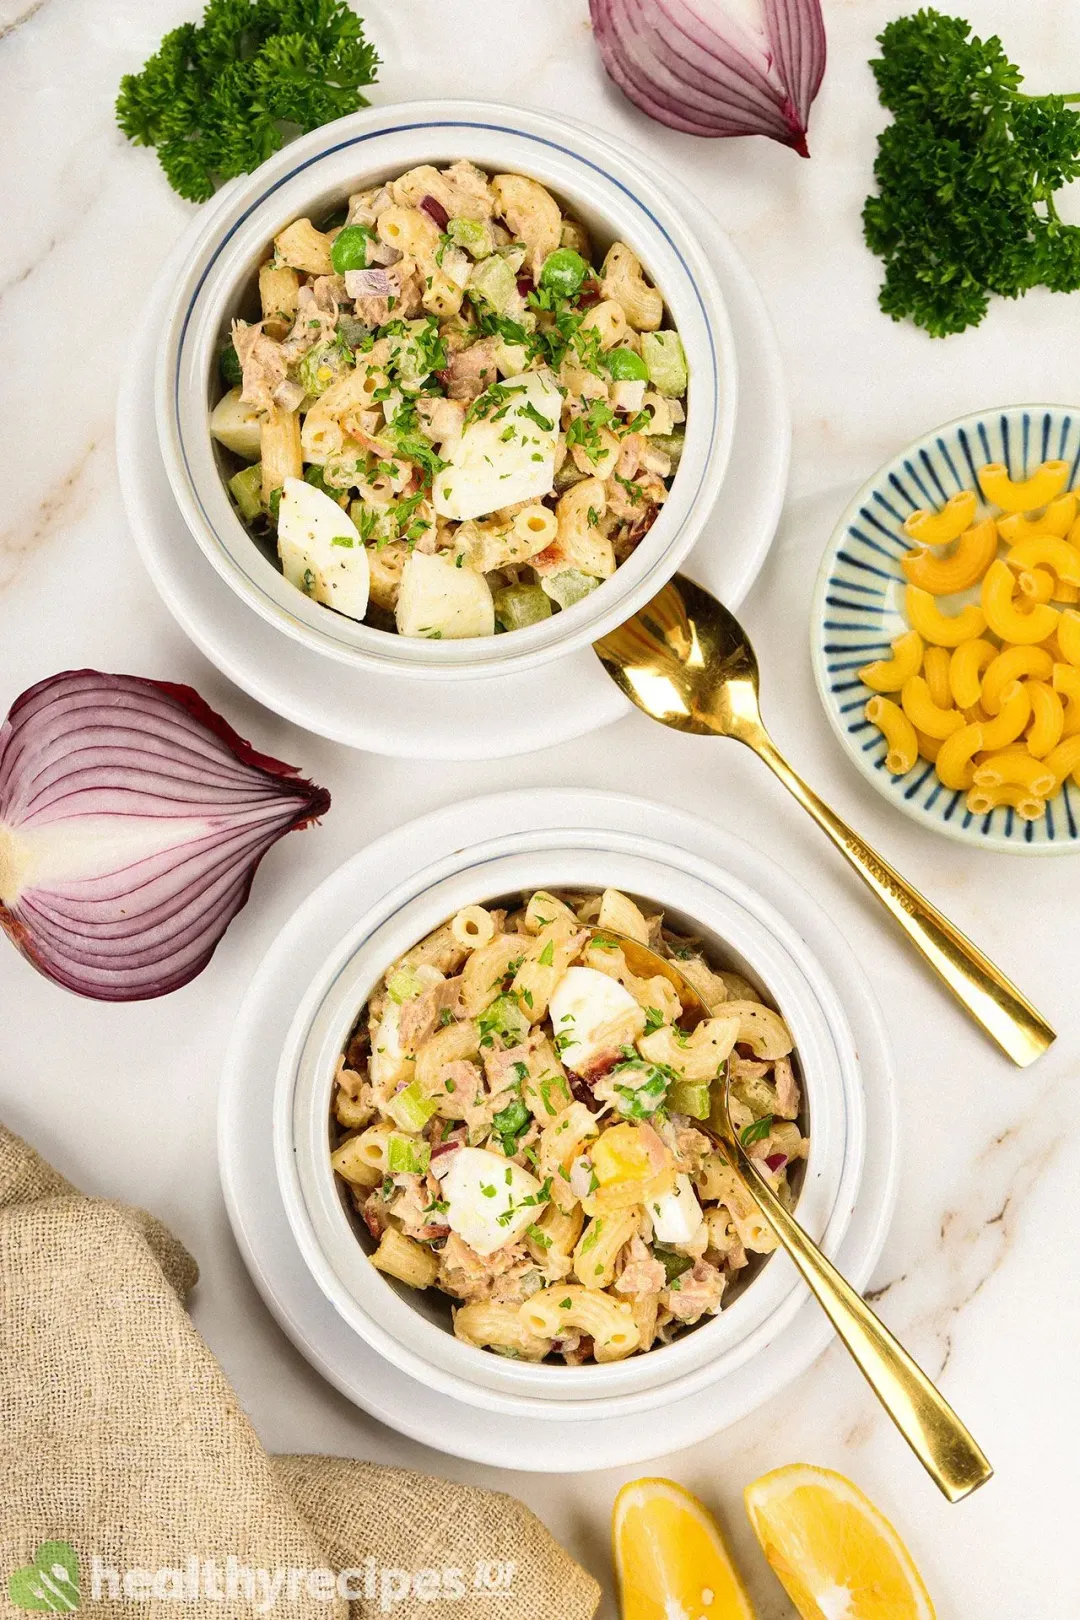 How to Store Leftovers Tuna Macaroni Salad